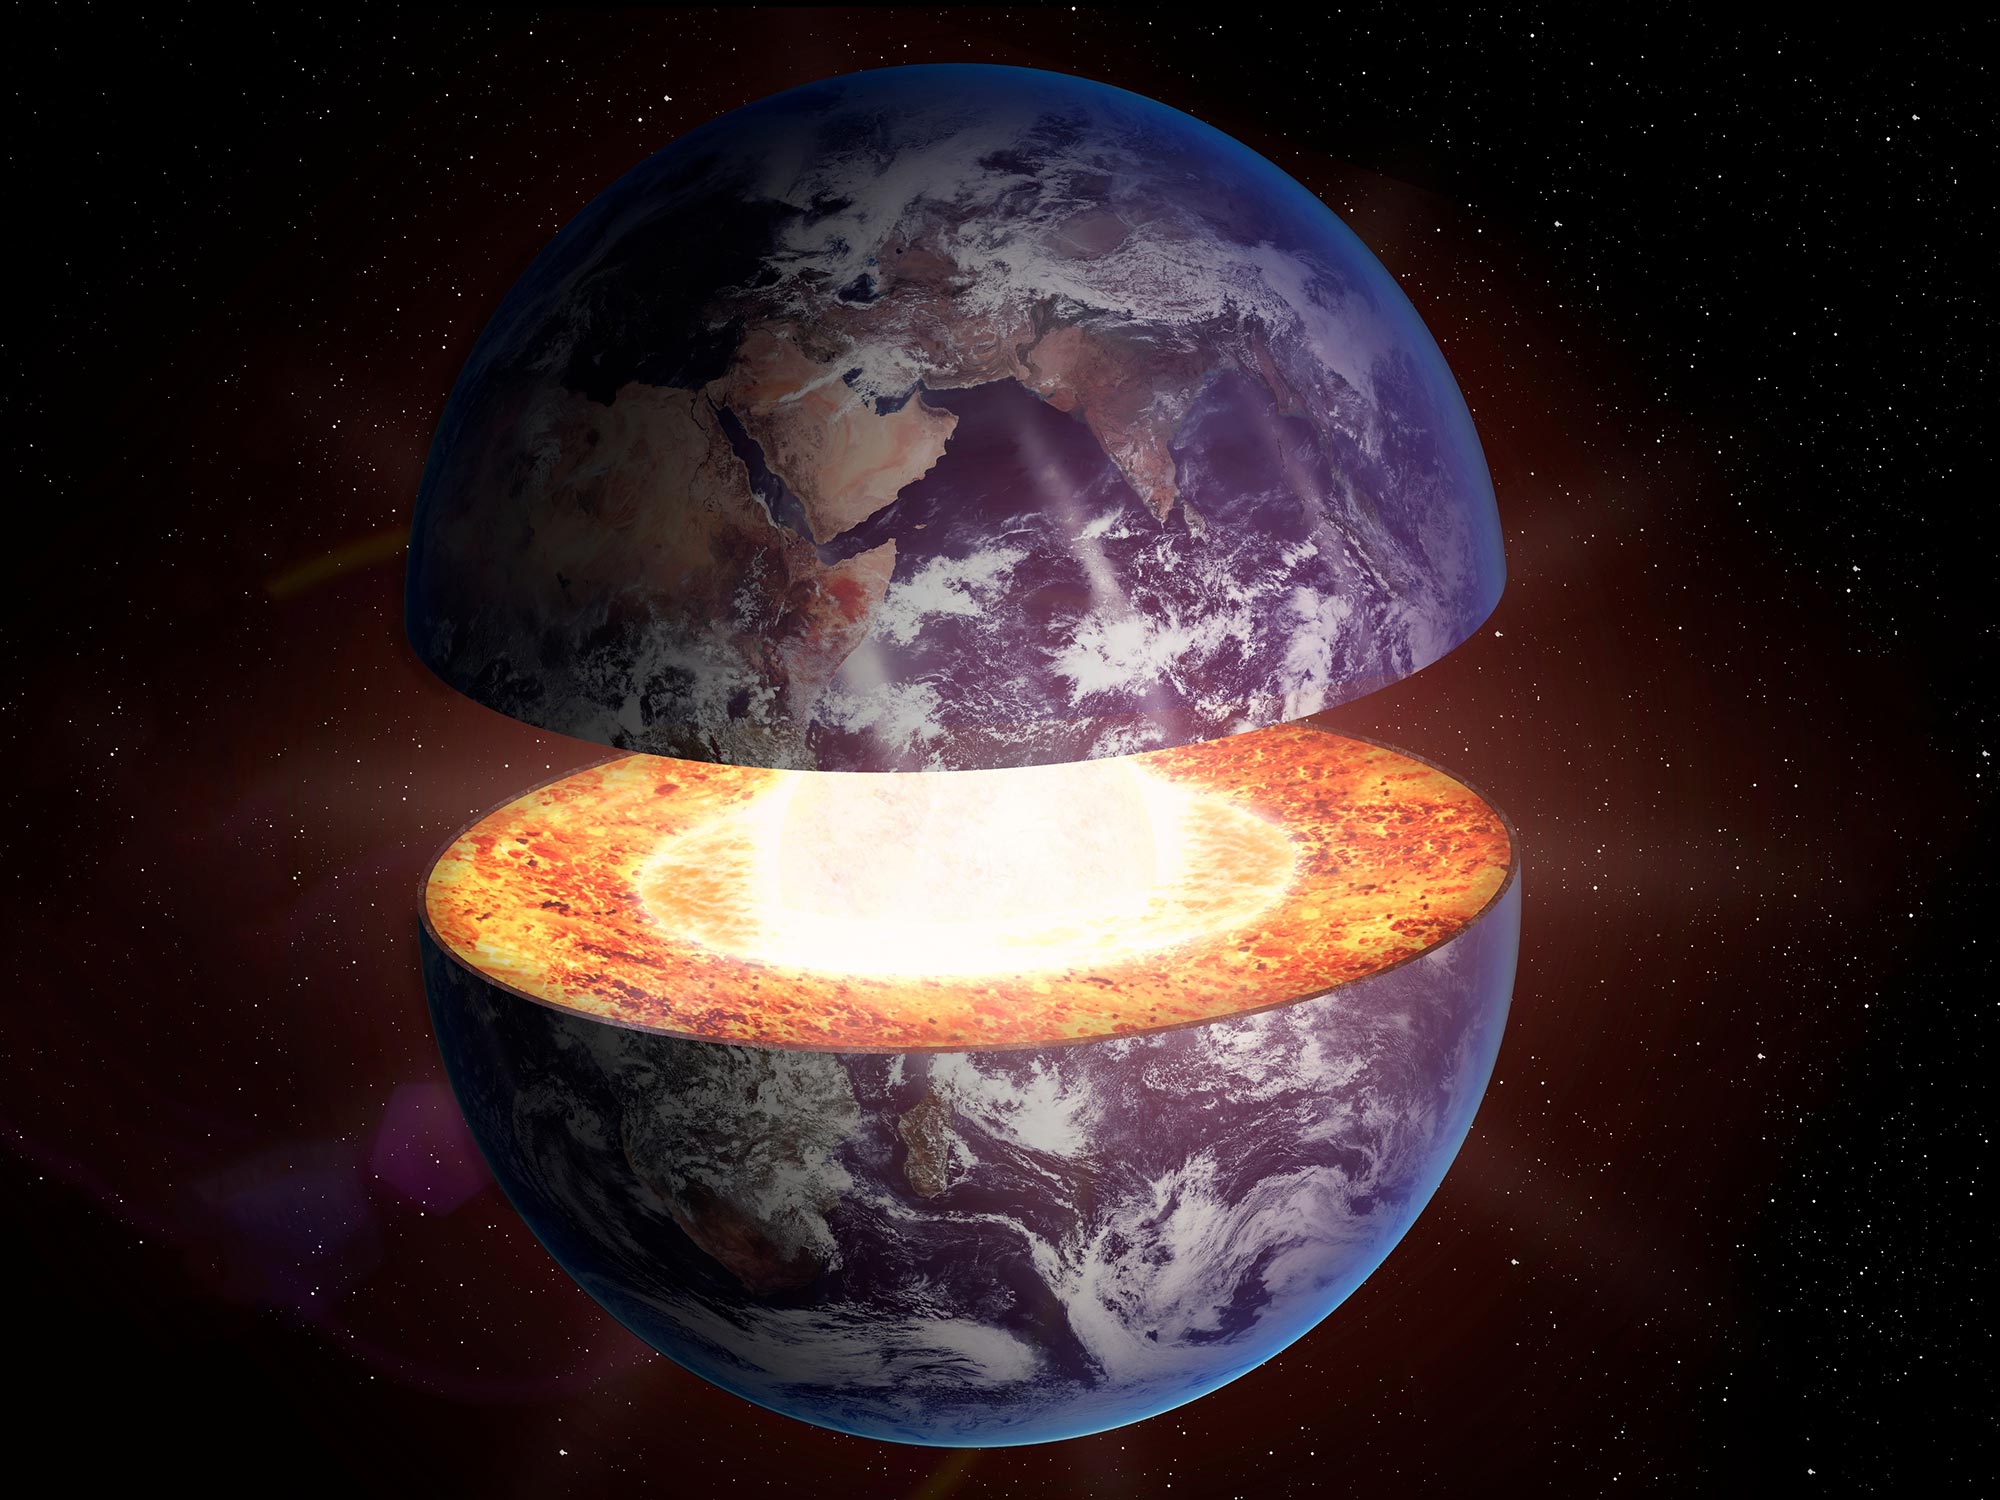 اكتشف العلماء جزءًا يبلغ عمره 4 مليارات عام من قشرة الأرض تحت غرب أستراليا